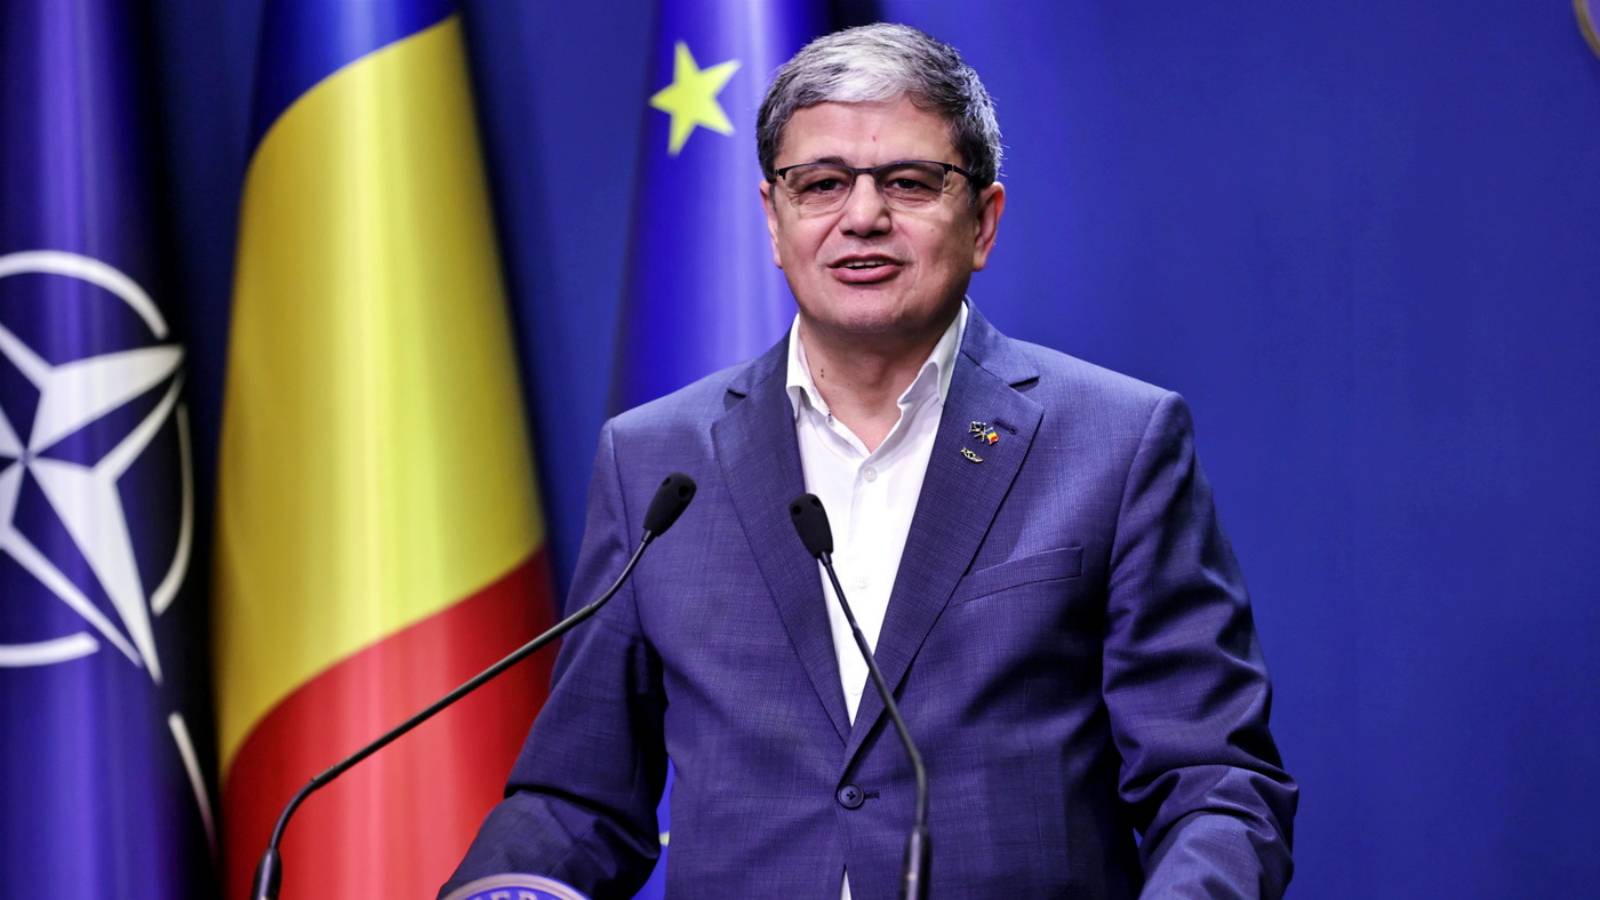 Marcel Bolos face Anunturile GRELE Romani Ministrul PSD Confirma Deciziile Dificile